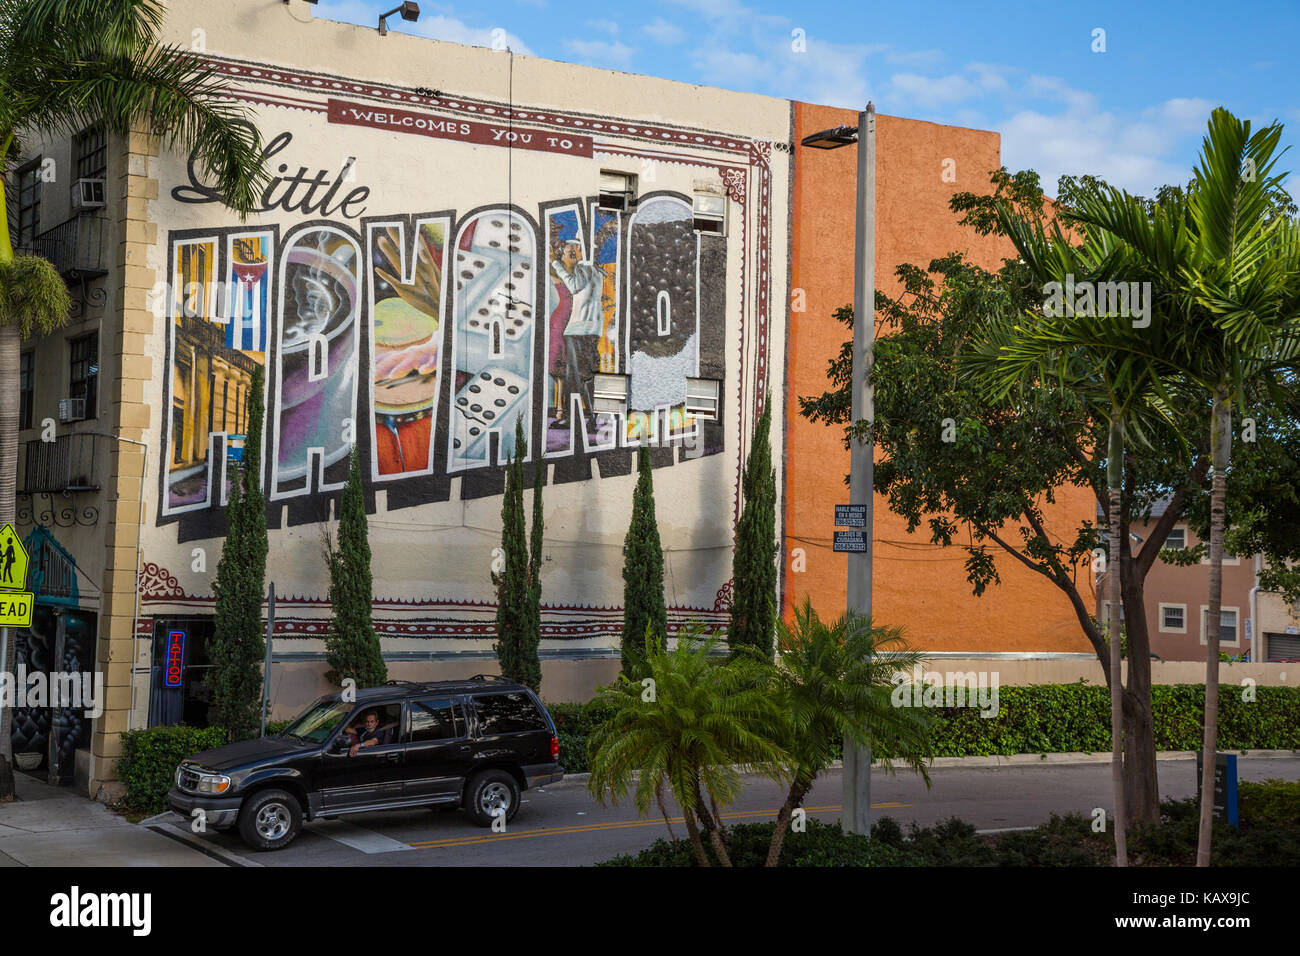 Miami, en Floride. Bienvenue à Little Havana. Calle Ocho. Banque D'Images